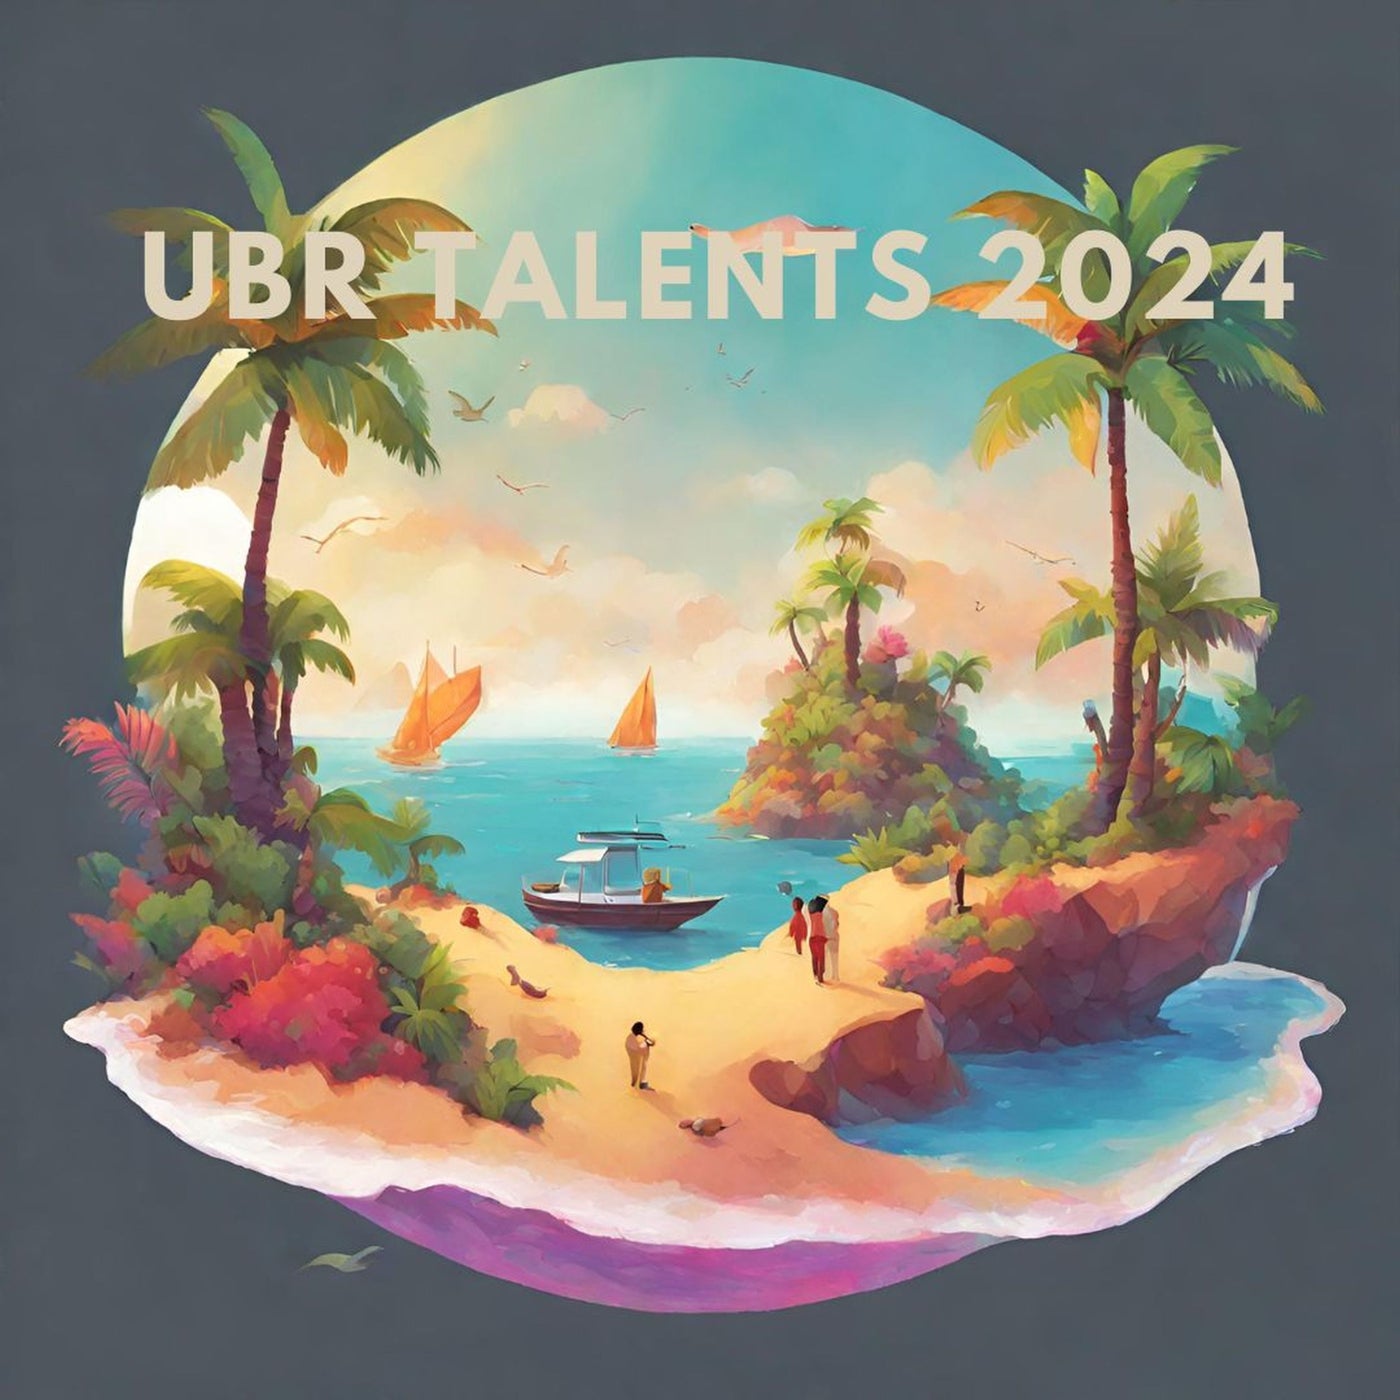 UBR Talents 2024